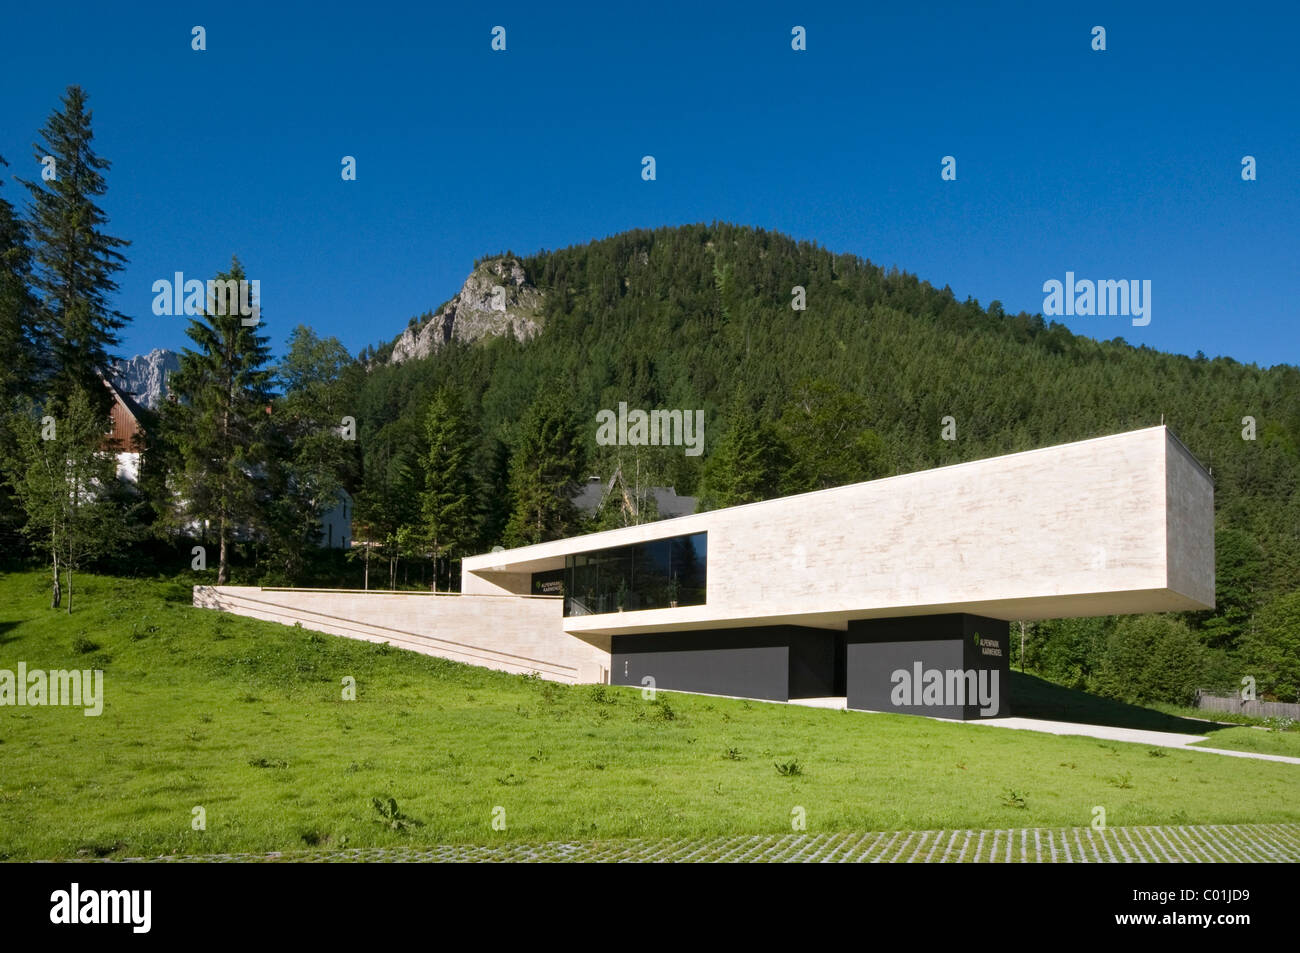 Le Centre des visiteurs du parc alpin du Karwendel, Hinterriss, Karwendel, Tyrol, Autriche, Europe Banque D'Images